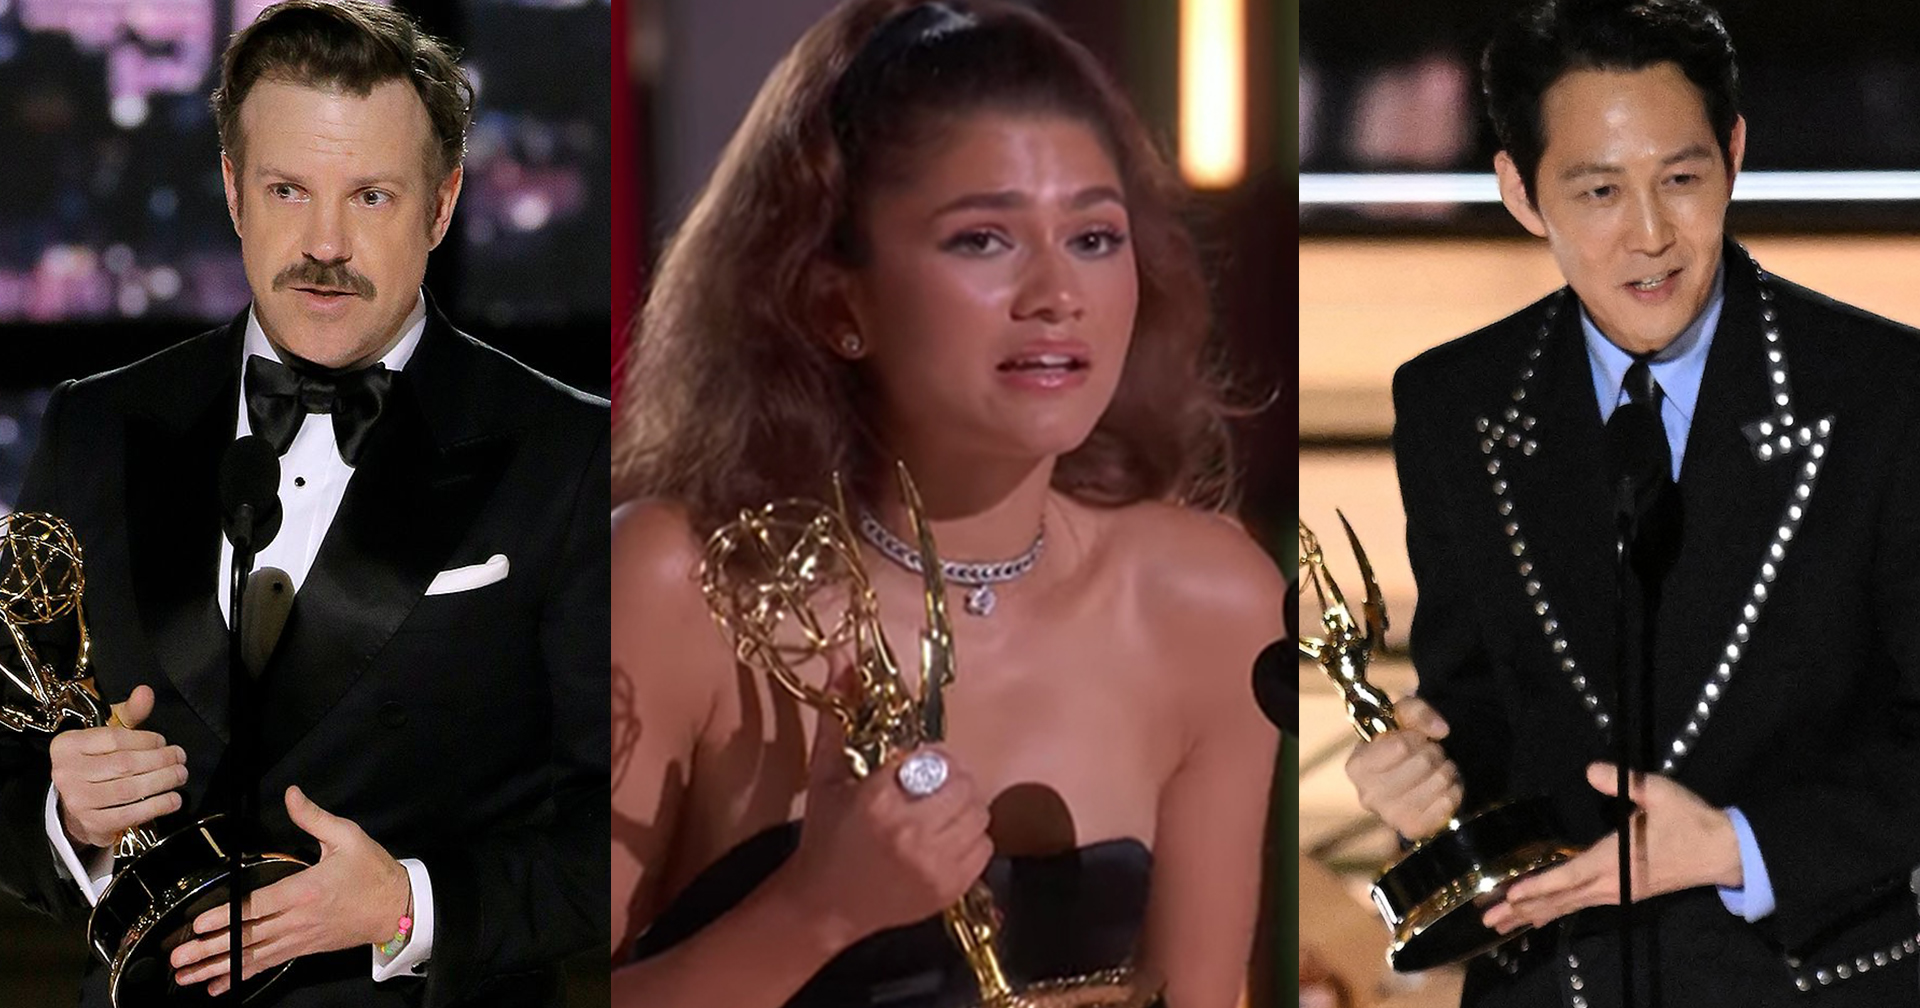 สรุปผล Emmy Awards 2022 อีจองแจ-Zendaya ผงาดคว้านำชาย-หญิง ‘The White Lotus’ กวาดรางวัลมากสุด